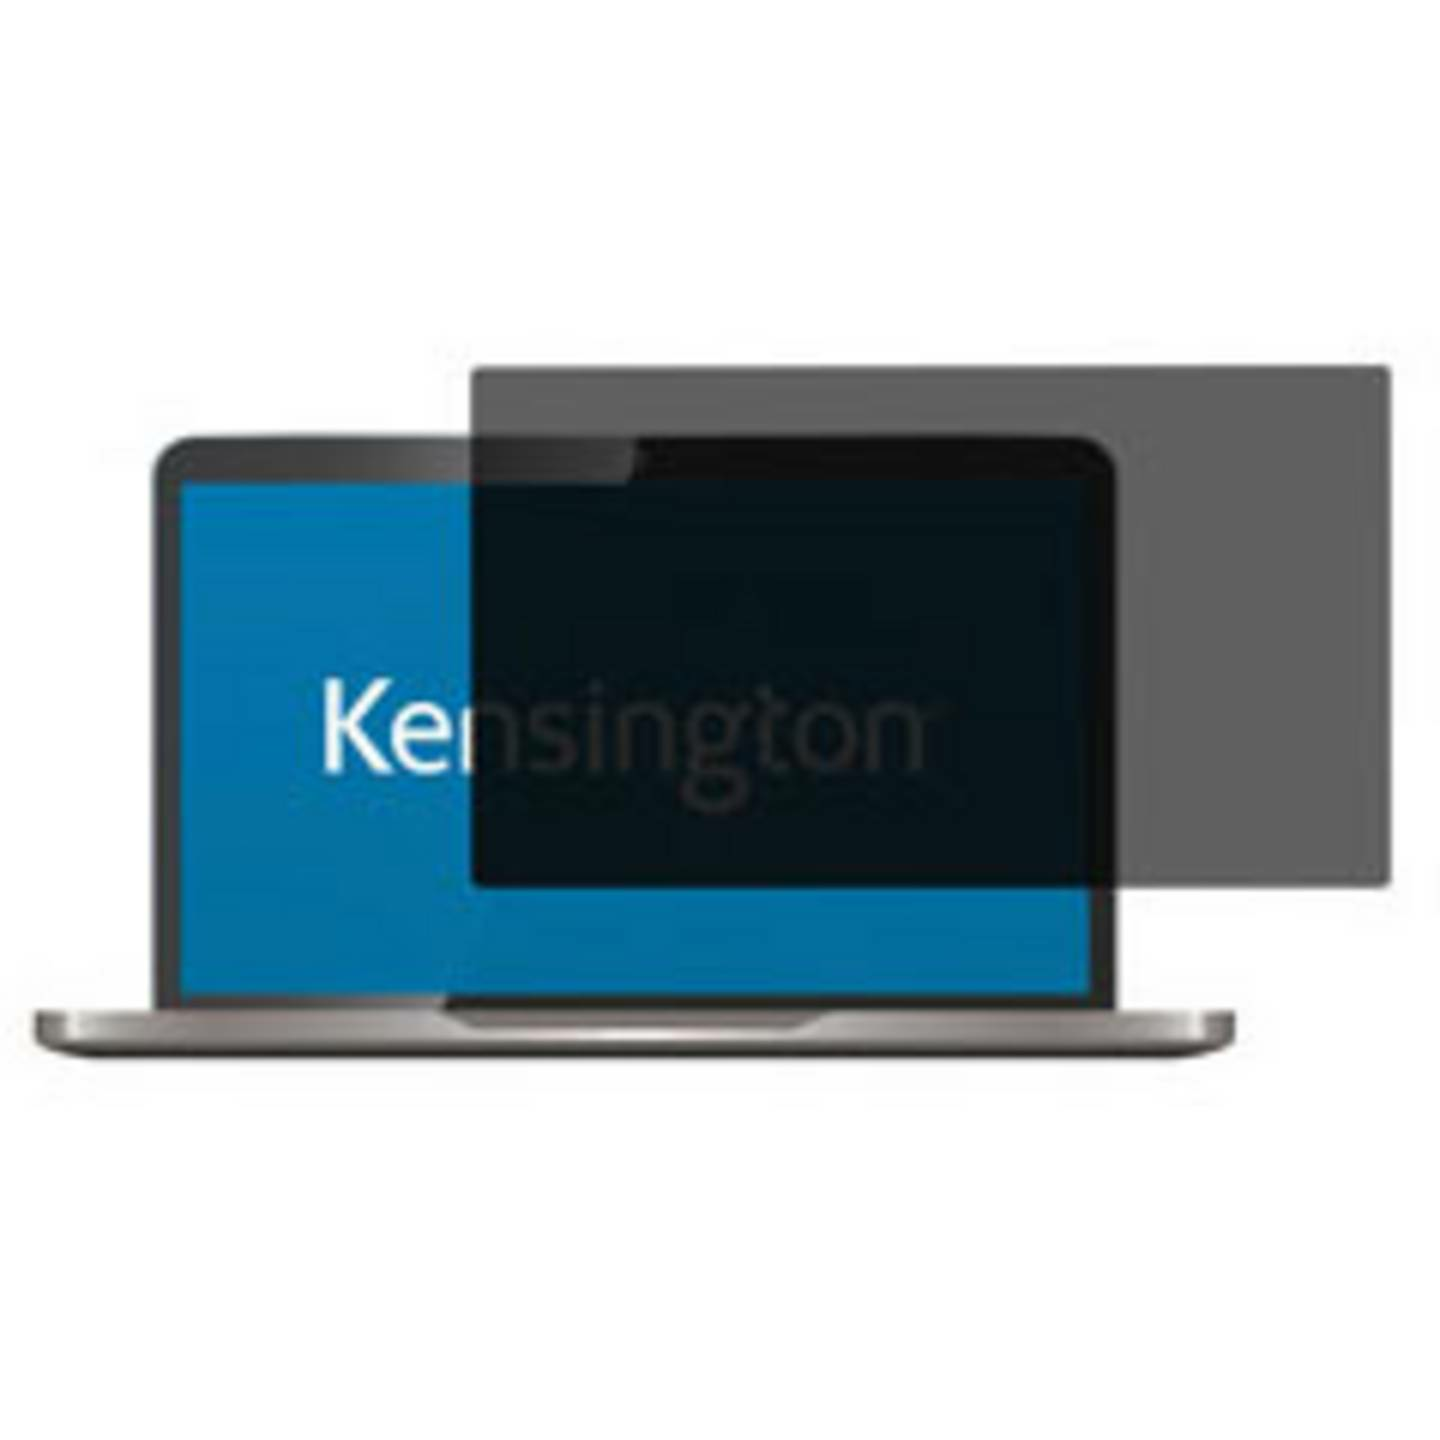 Kensington Blendschutzfilter Bildformat: 16:9 627188 Filter Sichtschutzfilter524